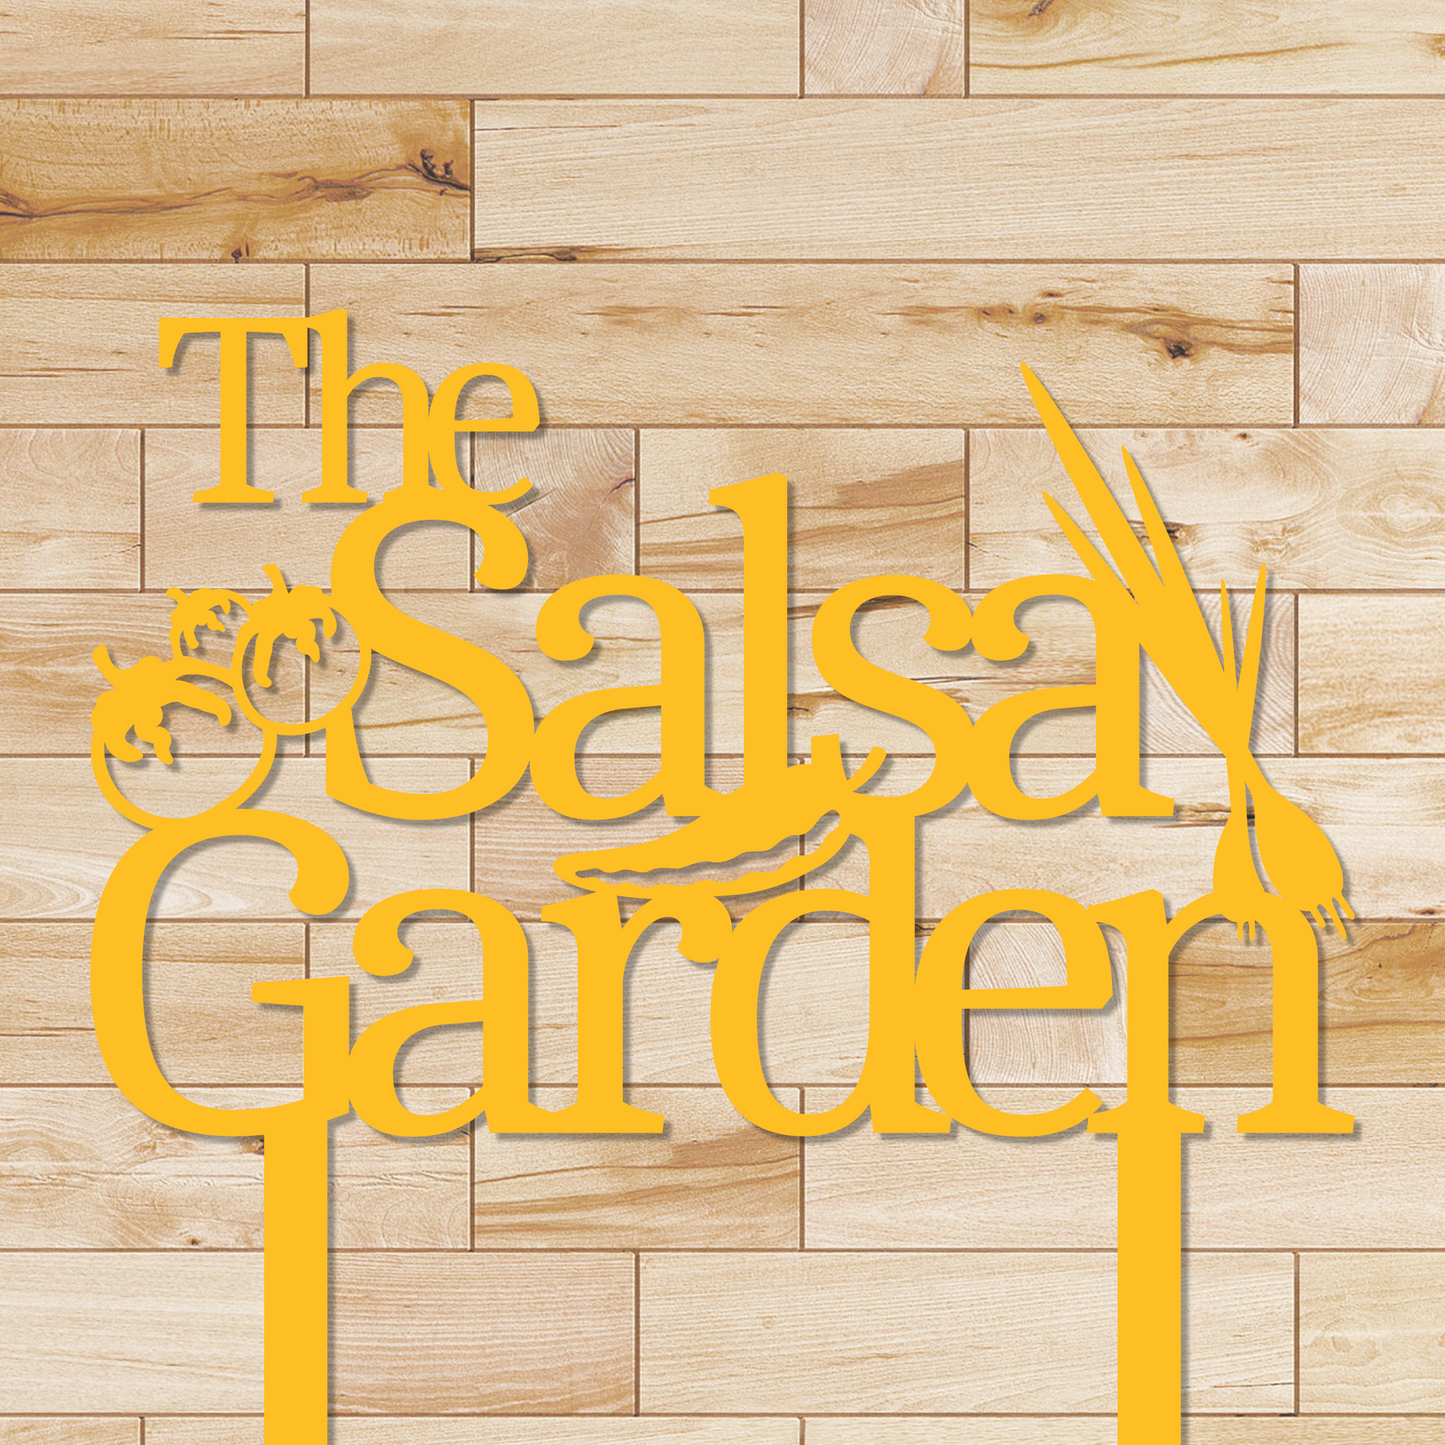 The Salsa Garden